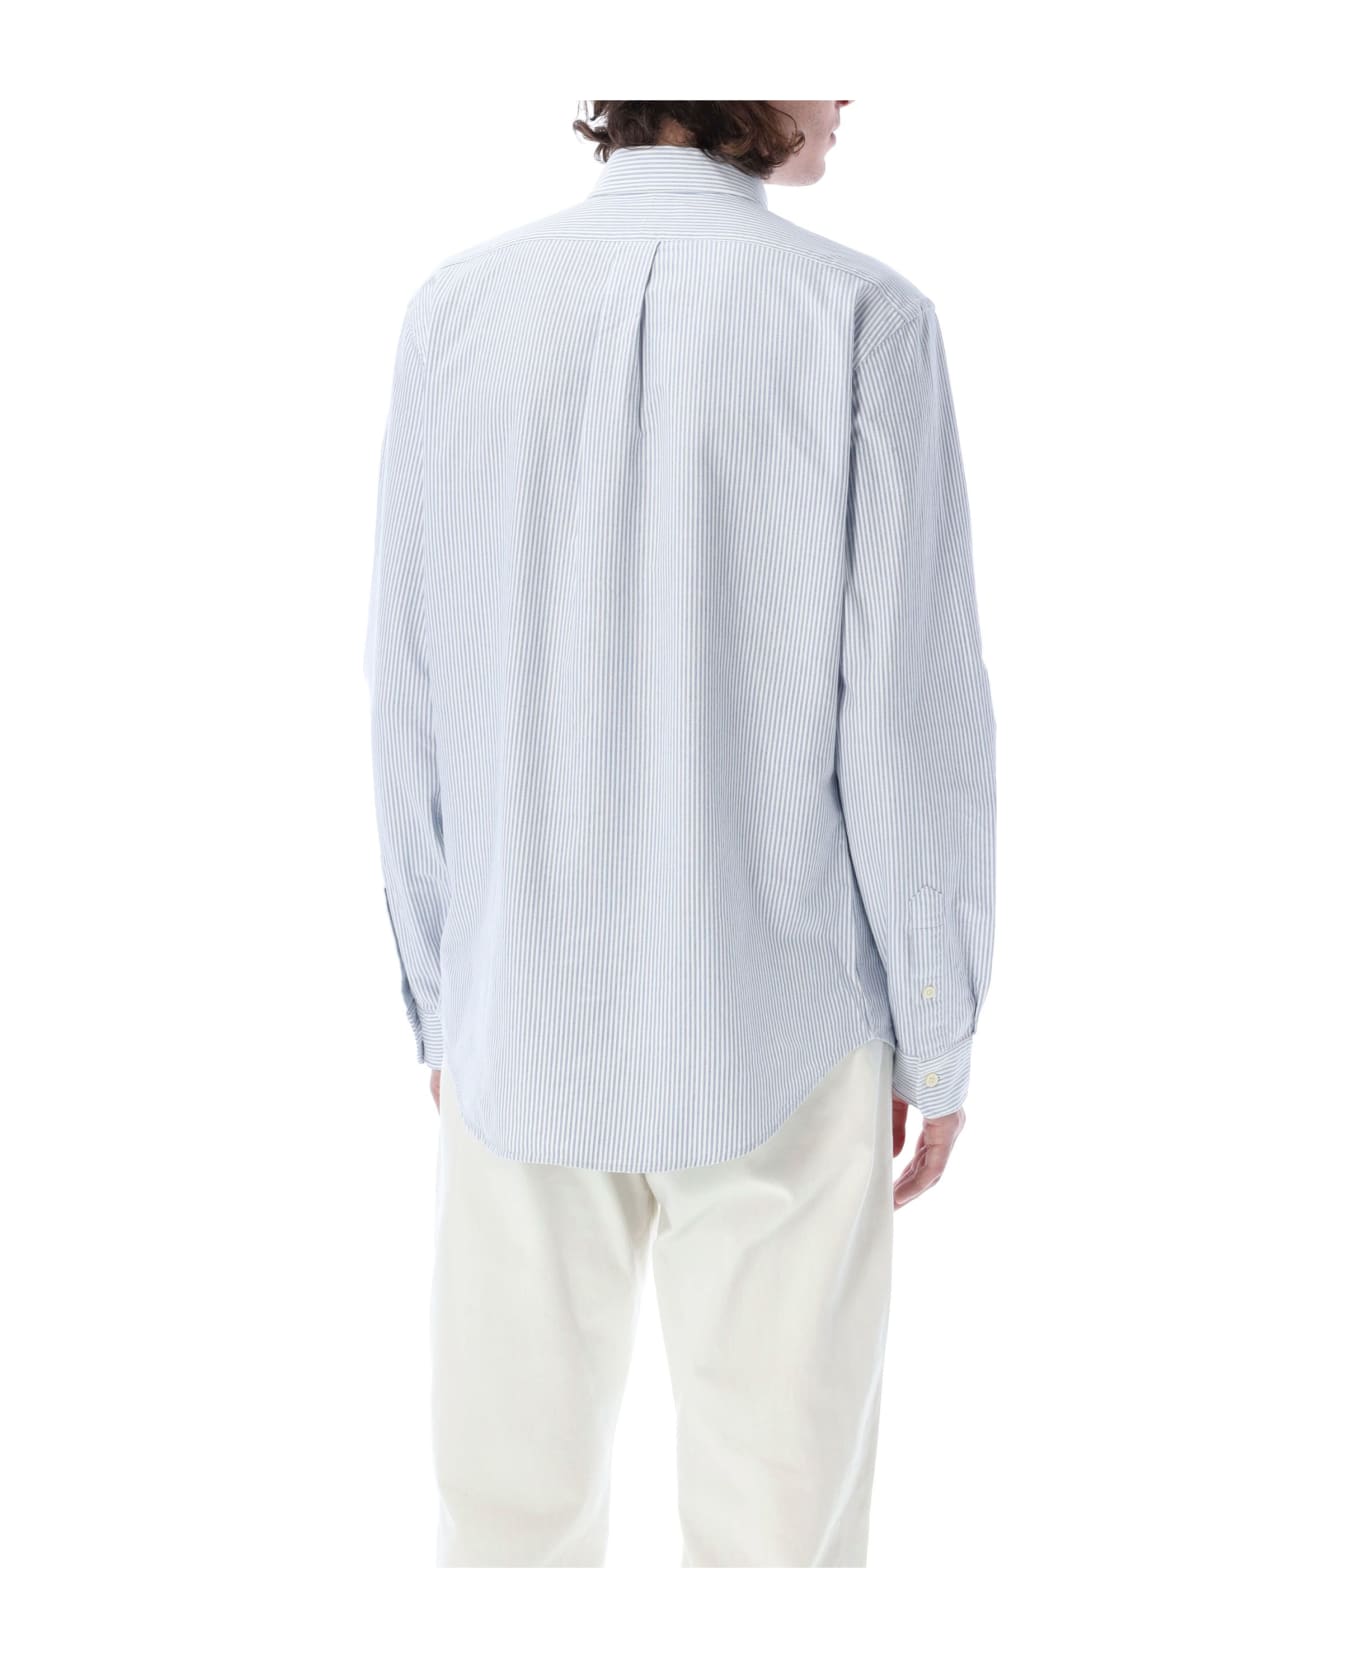 Polo Ralph Lauren Custom Fit Shirt - LIGHT BLUE STRIPES